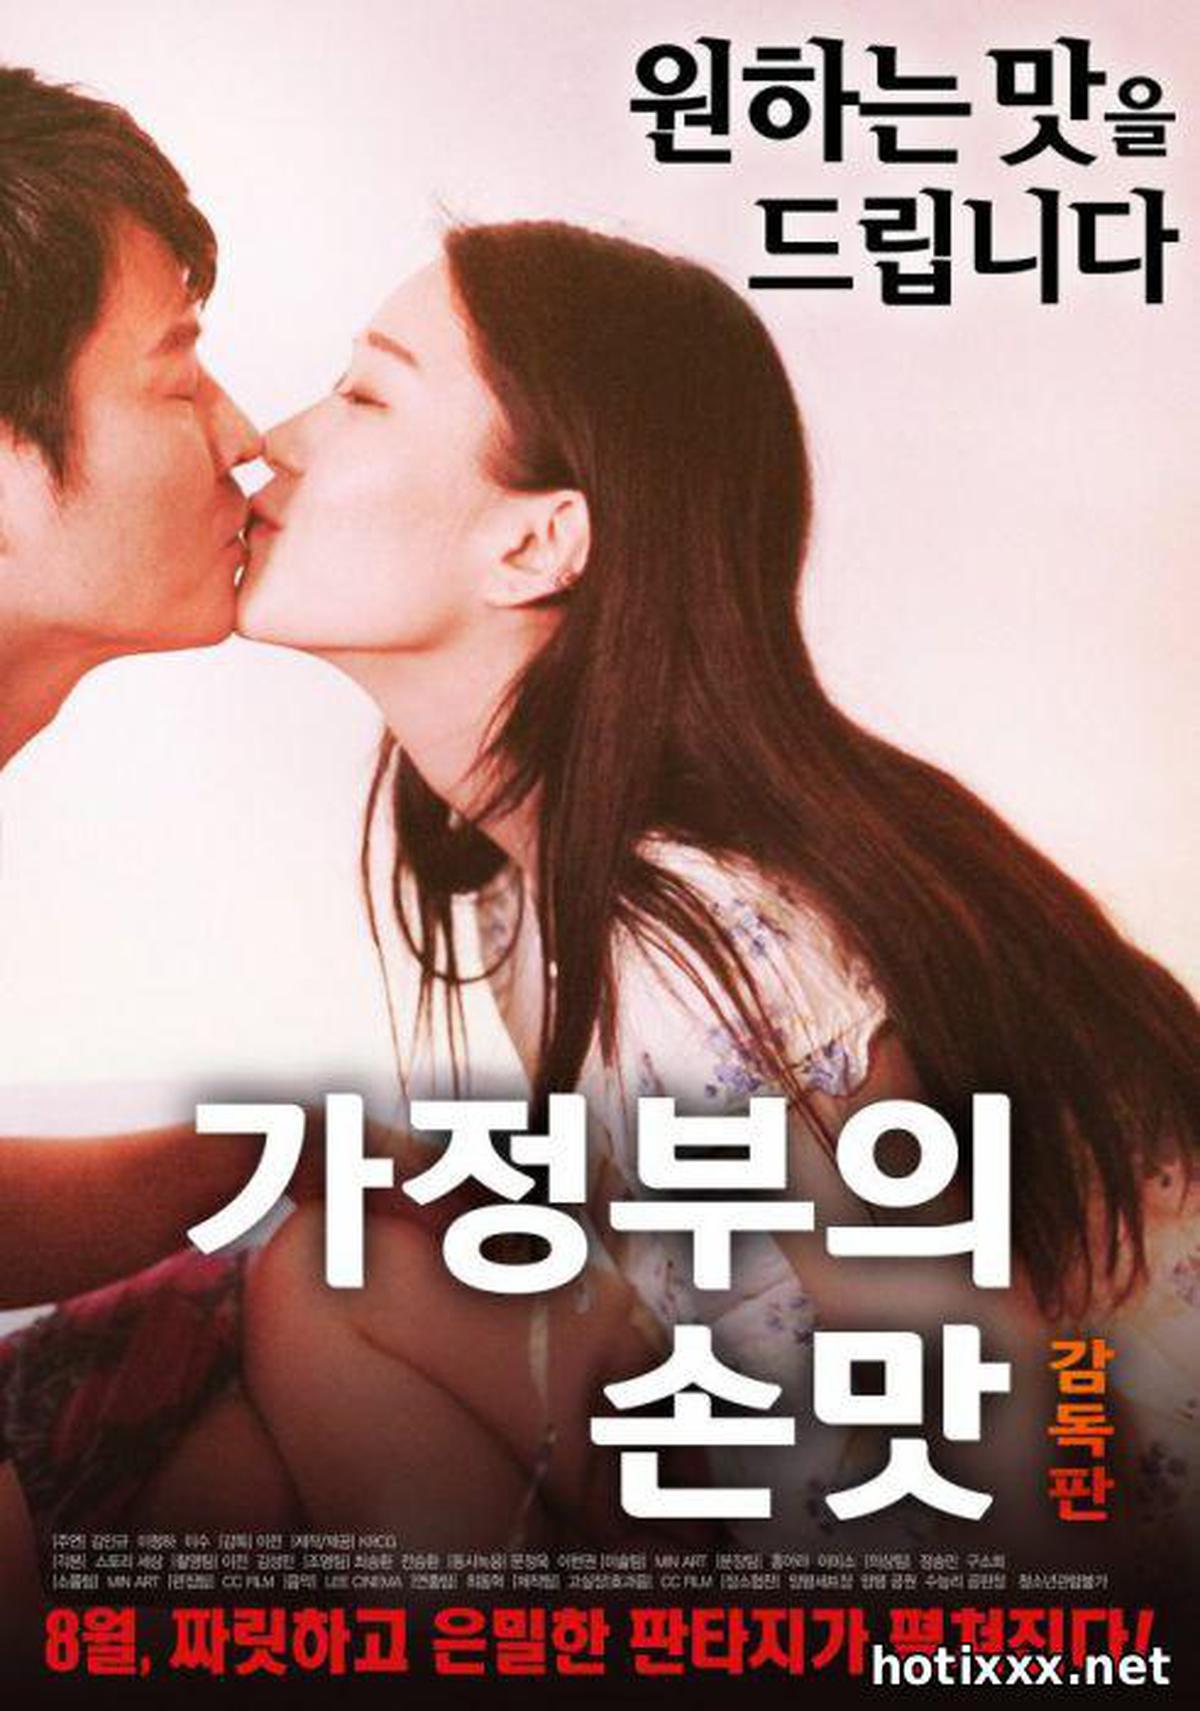 정부의 손맛 감독판 / ga-jeong-bu-eui son-mat gam-dok-pan / The Maid's Comfort Food – Director's Cut (2017)